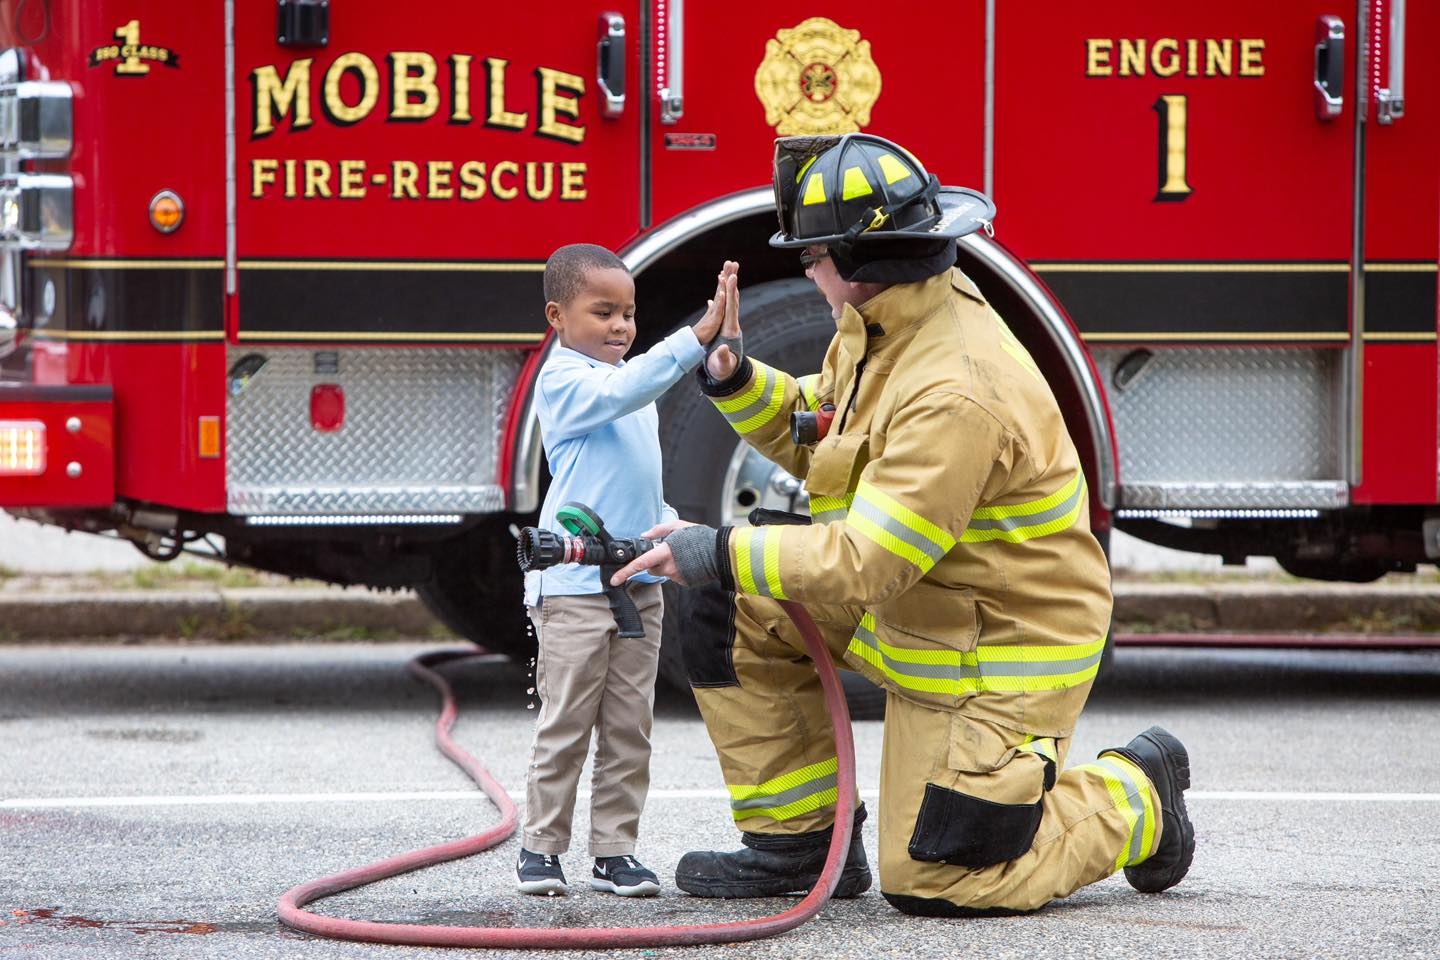 Mobile Fire Rescue Engine 18 Mobile Fire Rescue Engine 18